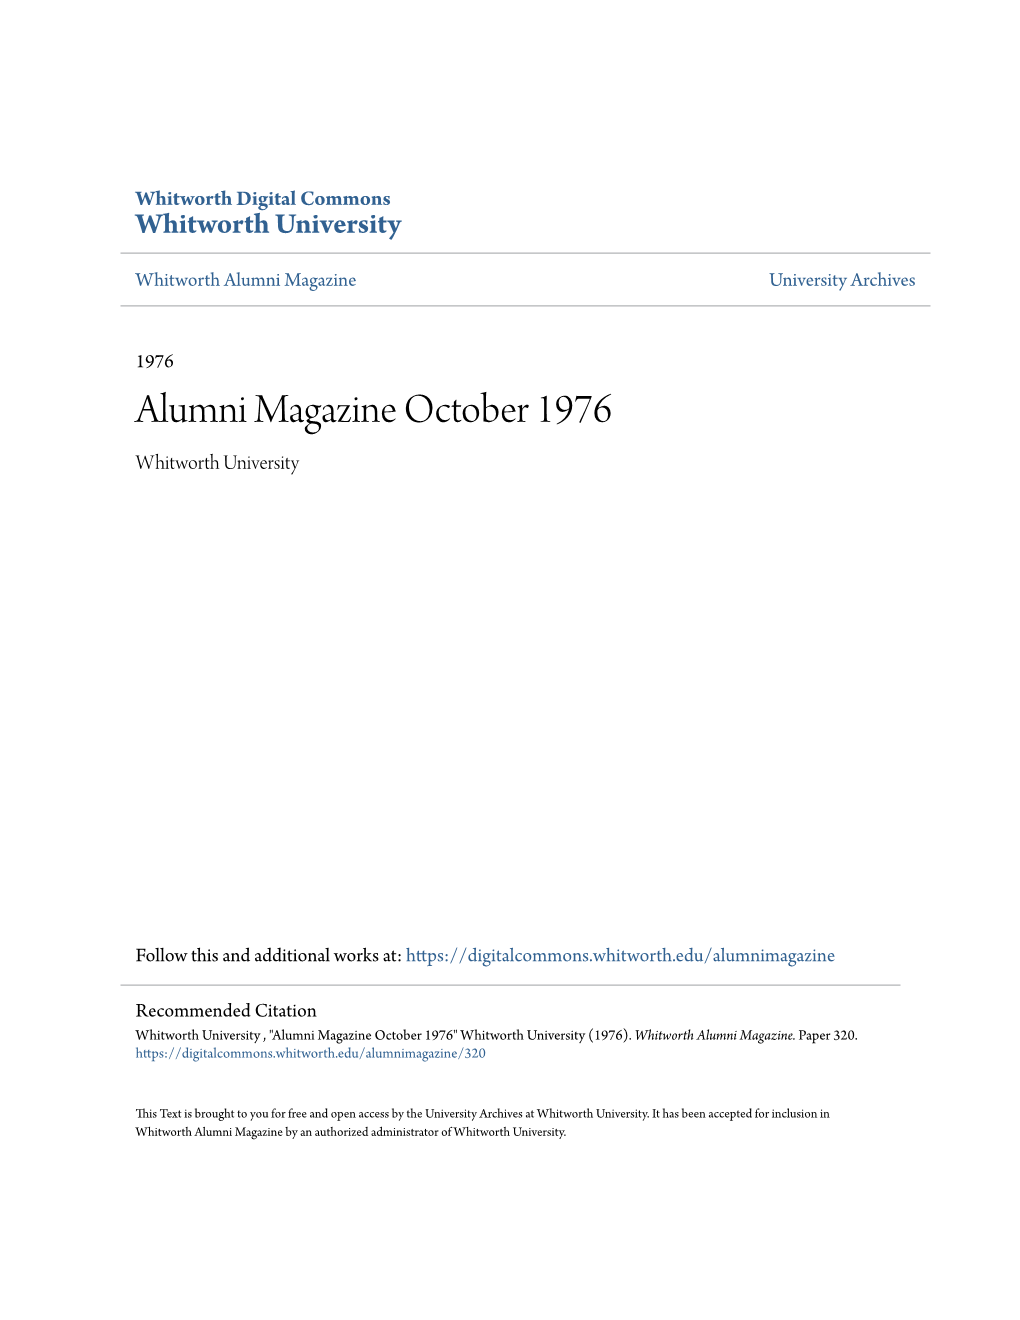 Alumni Magazine October 1976 Whitworth University